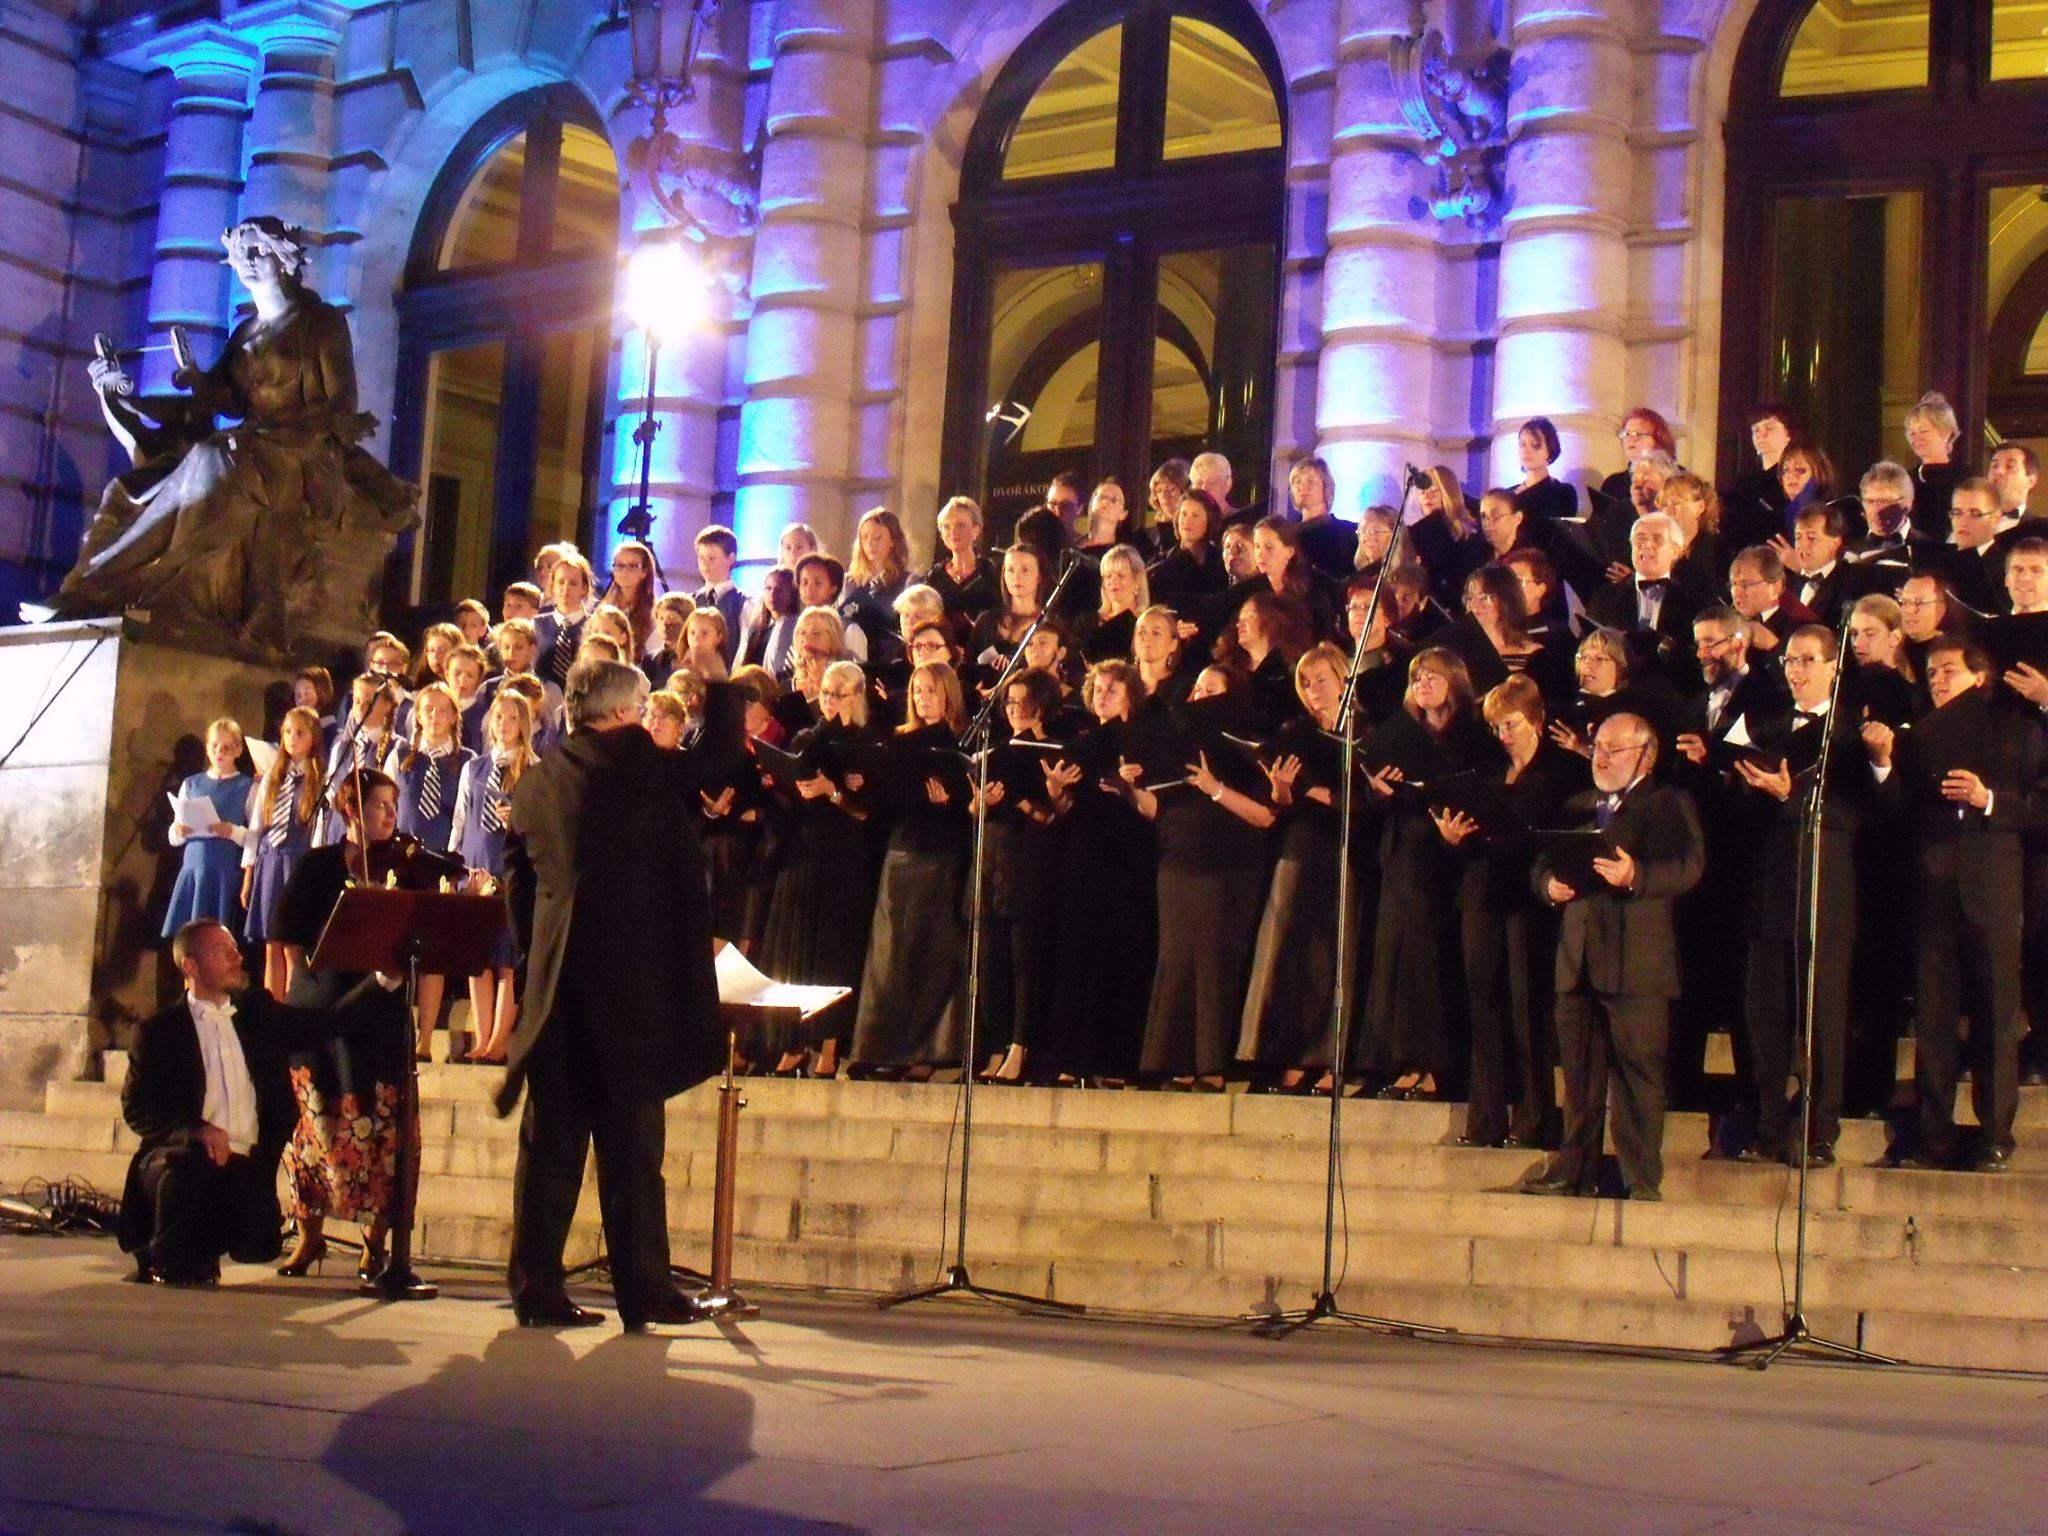 Koncert s En arché a Kühnovým dětským sborem na schodech Rudolfina, Praha, 2015